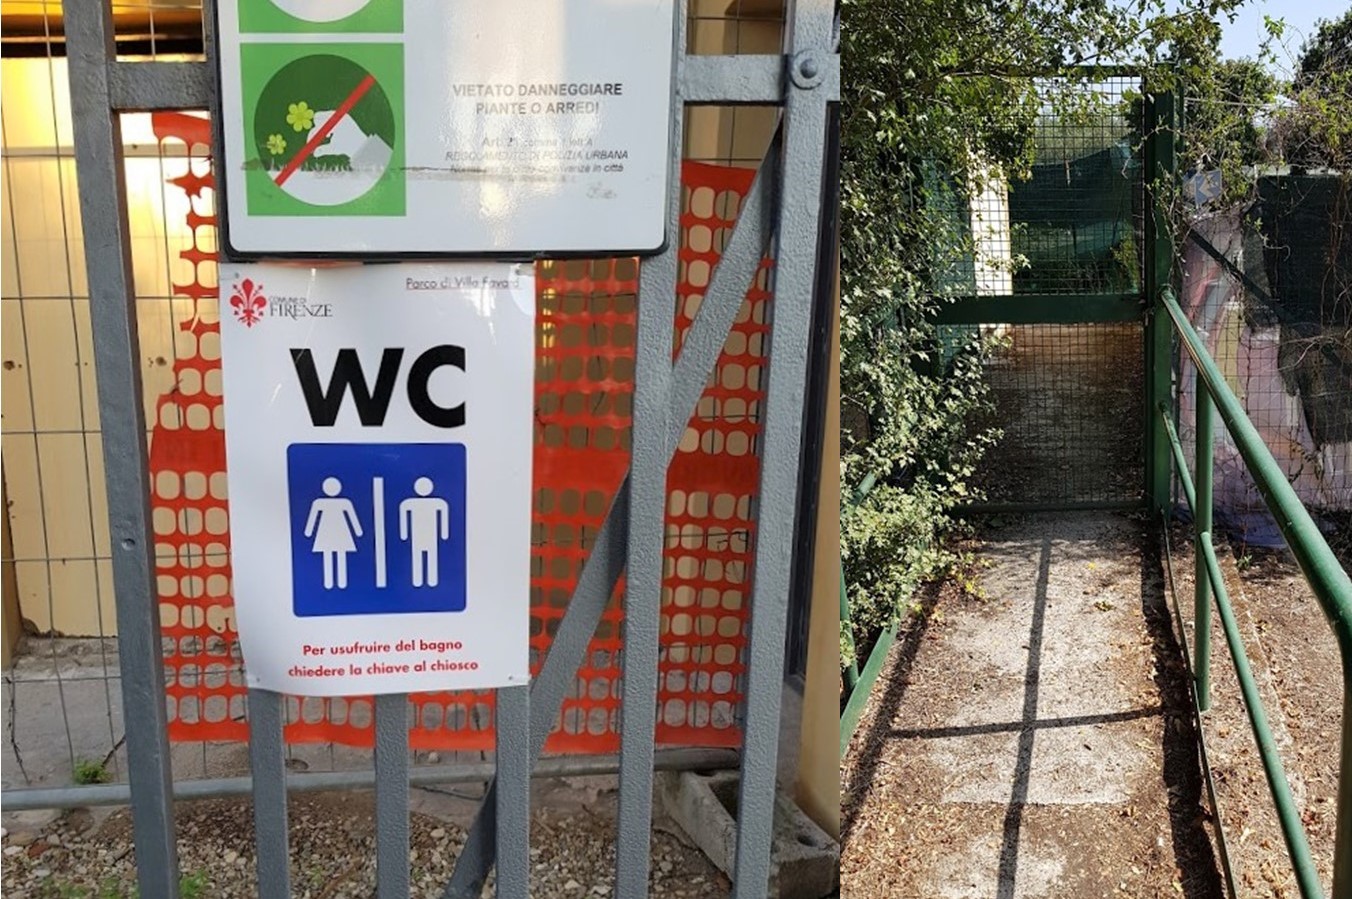 Firenze: novità per i bagni pubblici nel Parco di Villa Favard a Rovezzano, ma non basta.